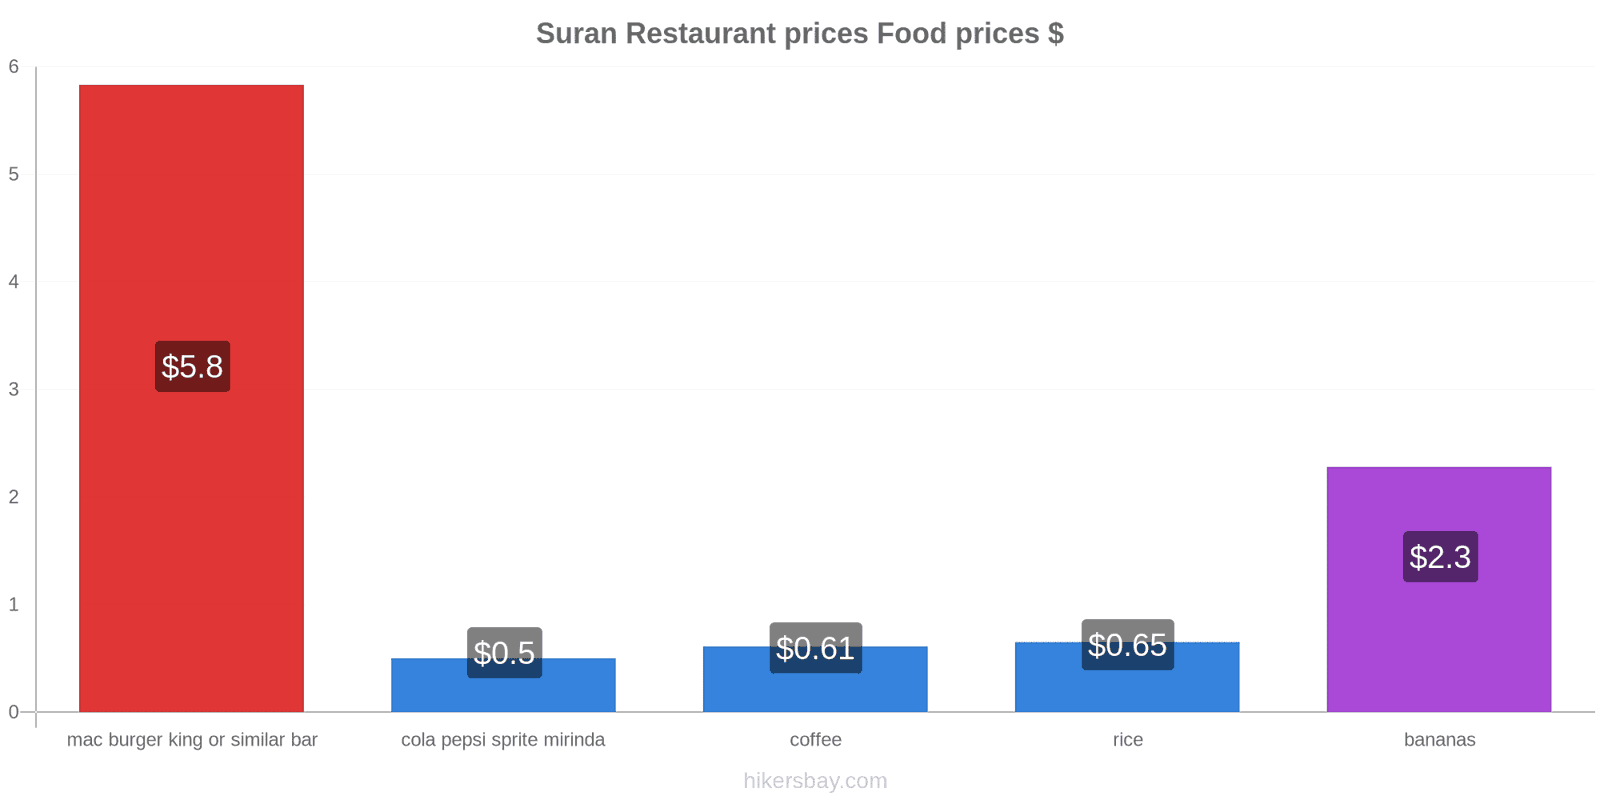 Suran price changes hikersbay.com